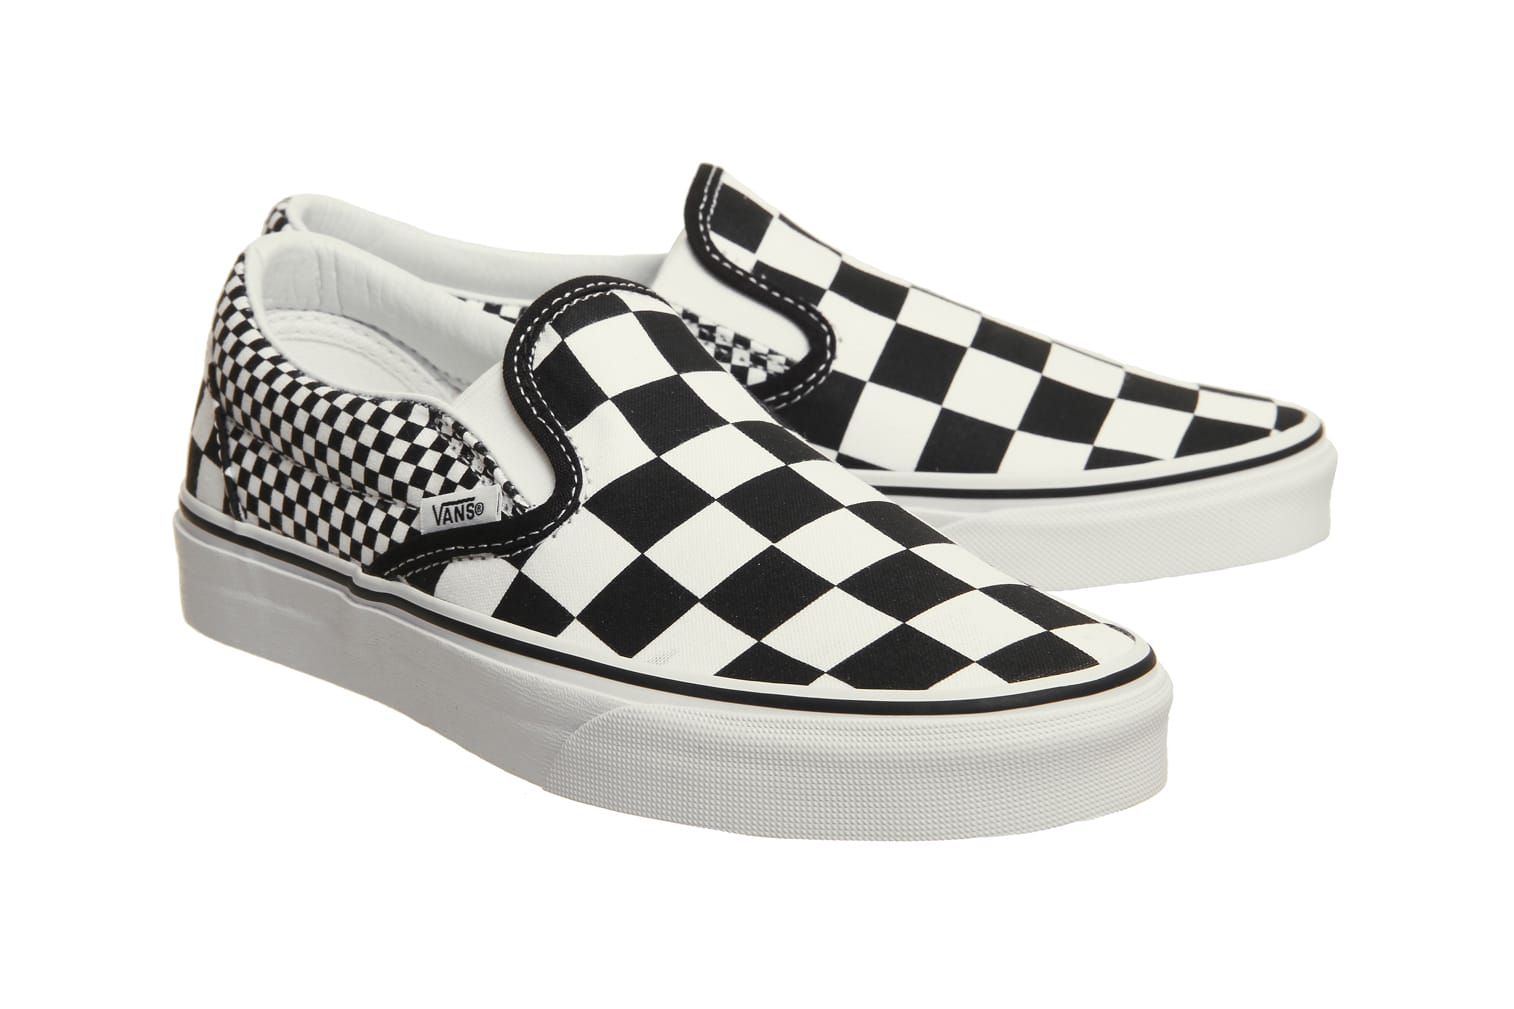 Vans Releases Mixed Checkerboard Slip 